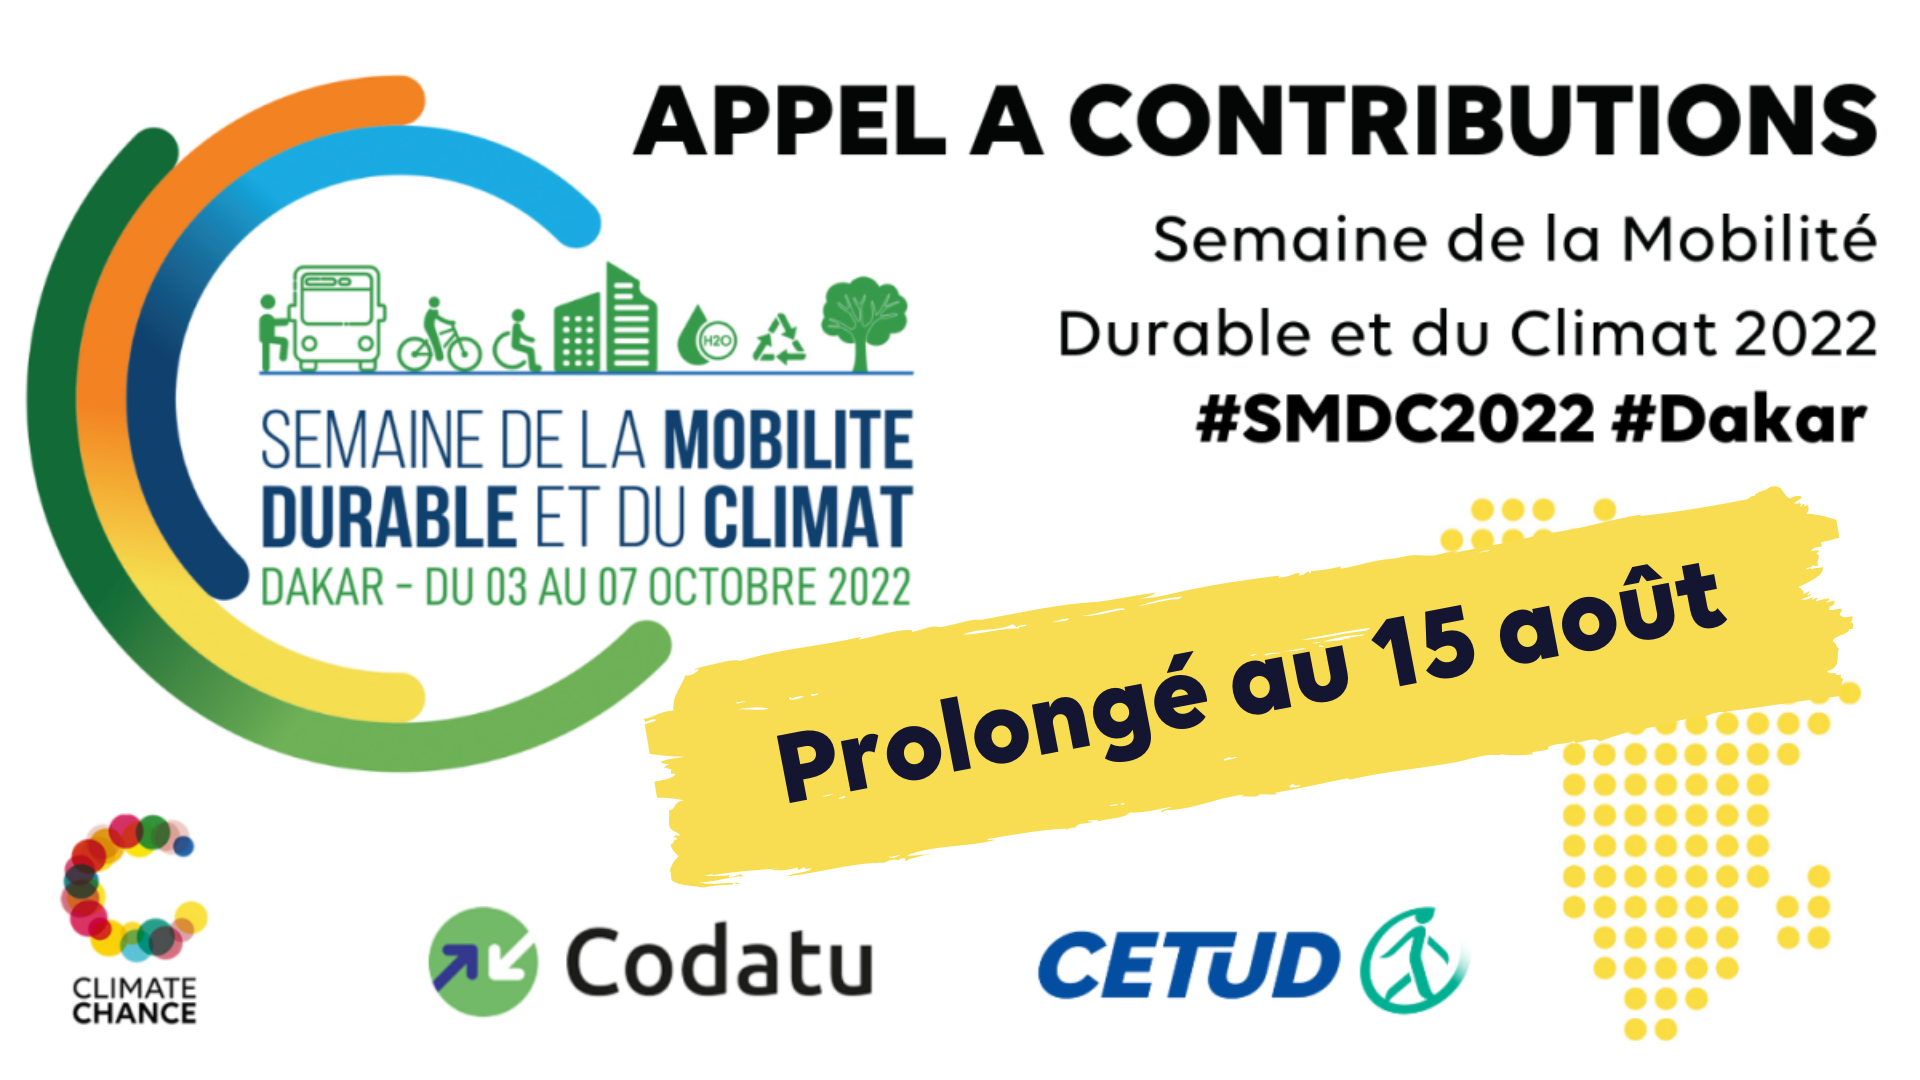 L’appel à contributions pour la Semaine de la Mobilité Durable et du Climat #SMDC2022 est prolongé jusqu’au 15 août !